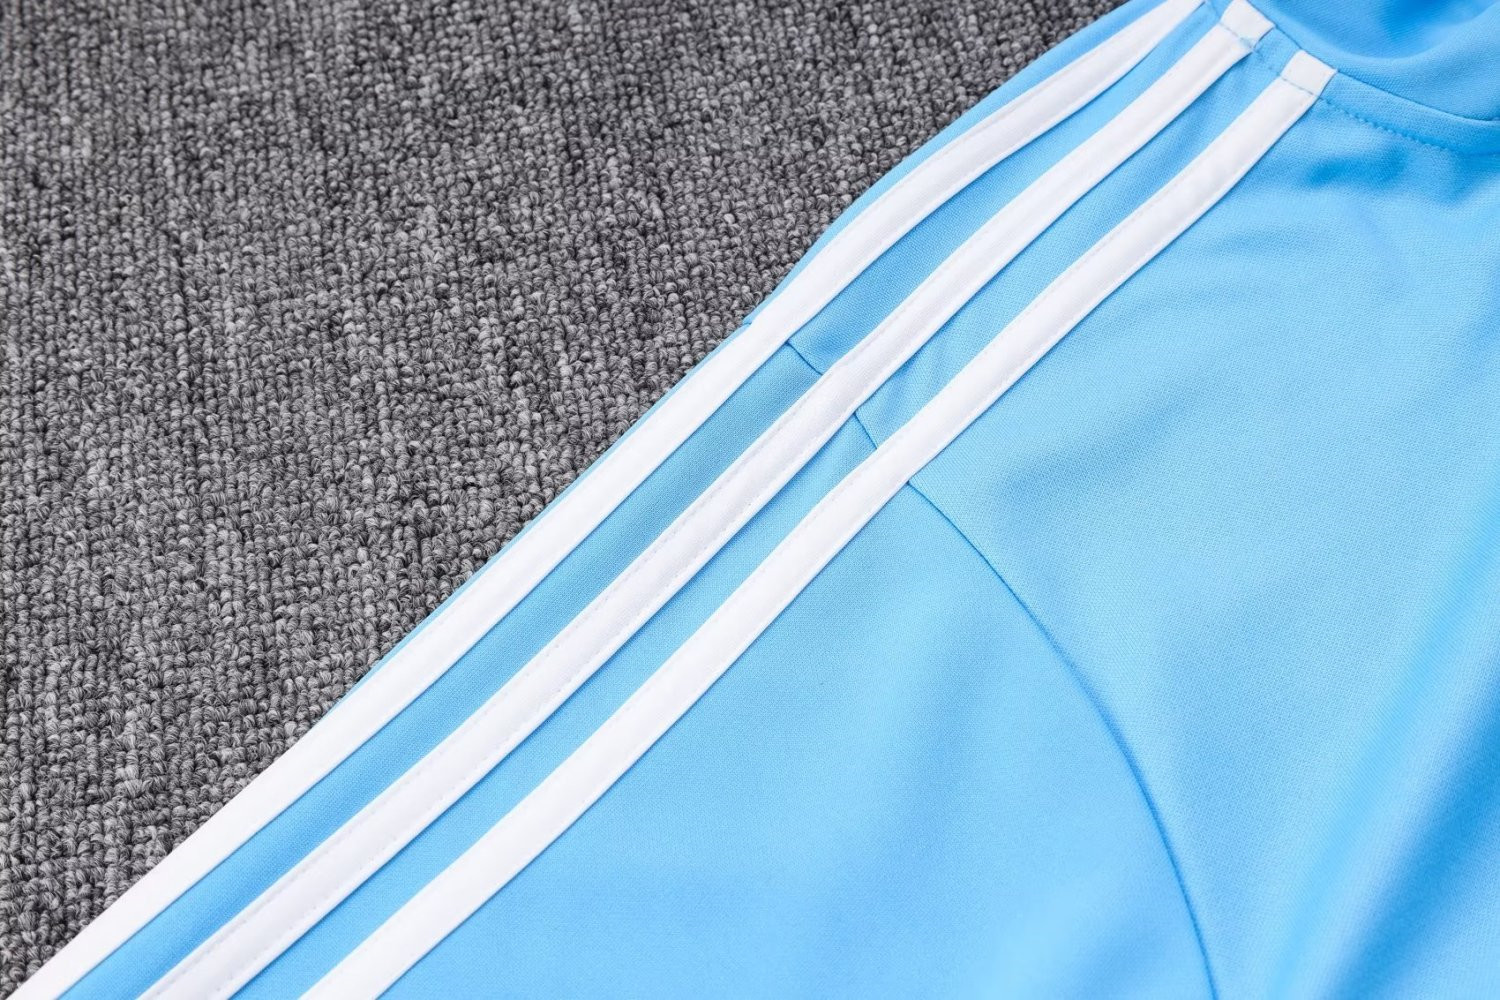 Argentina Soccer Jacket + Pants Replica Blue 2022 Mens